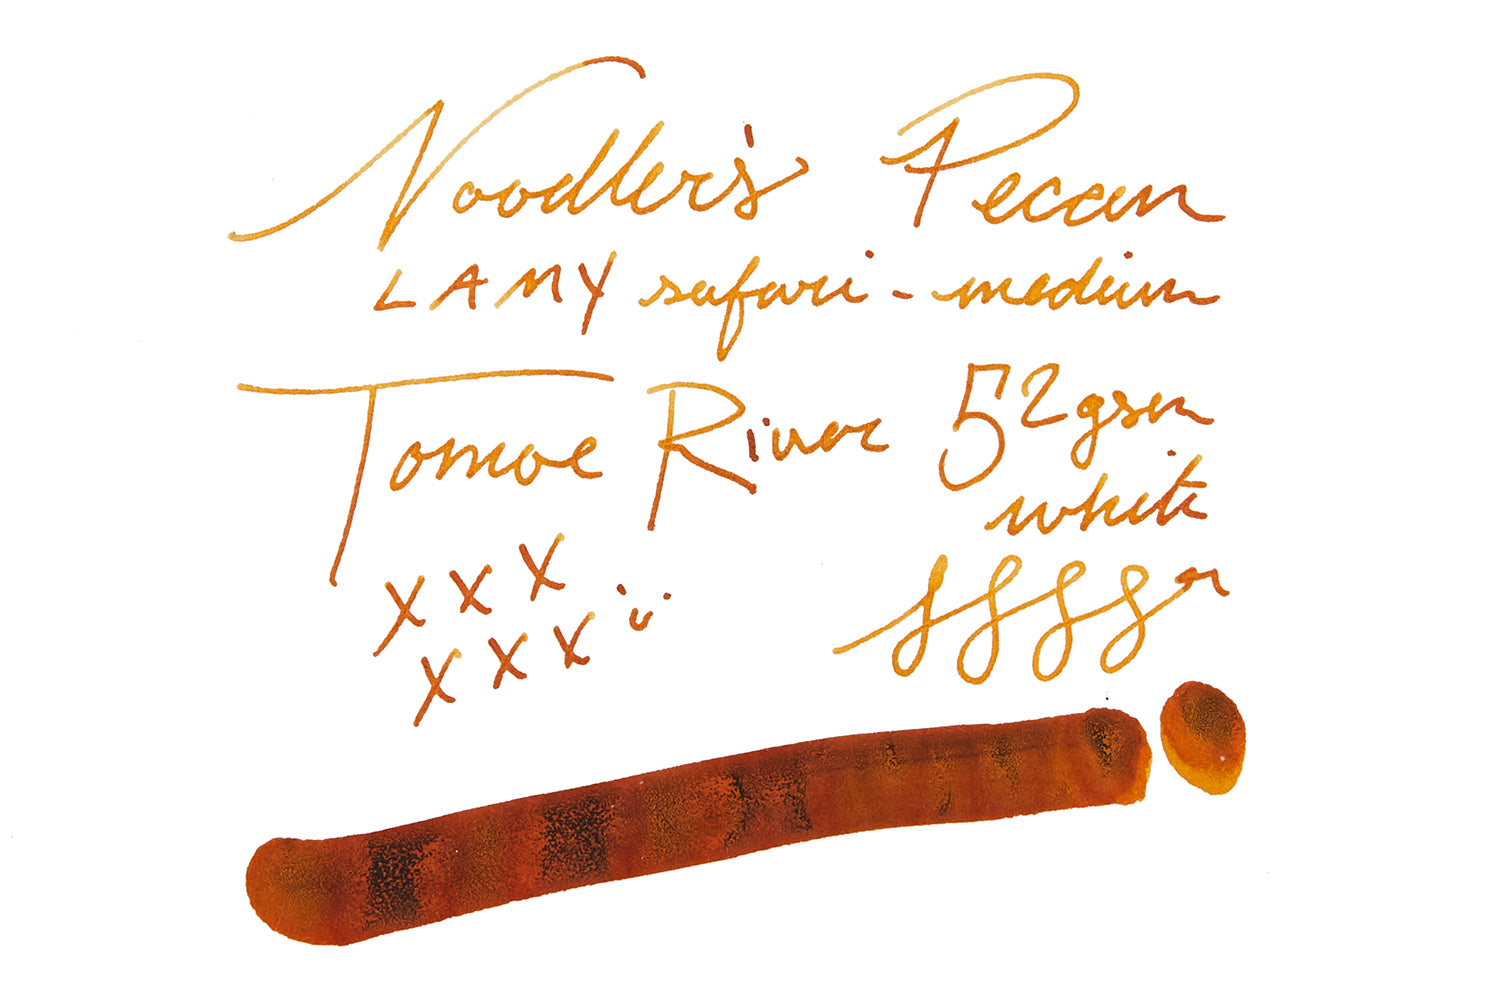 Noodler's Pecan ink on Tomoe River paper